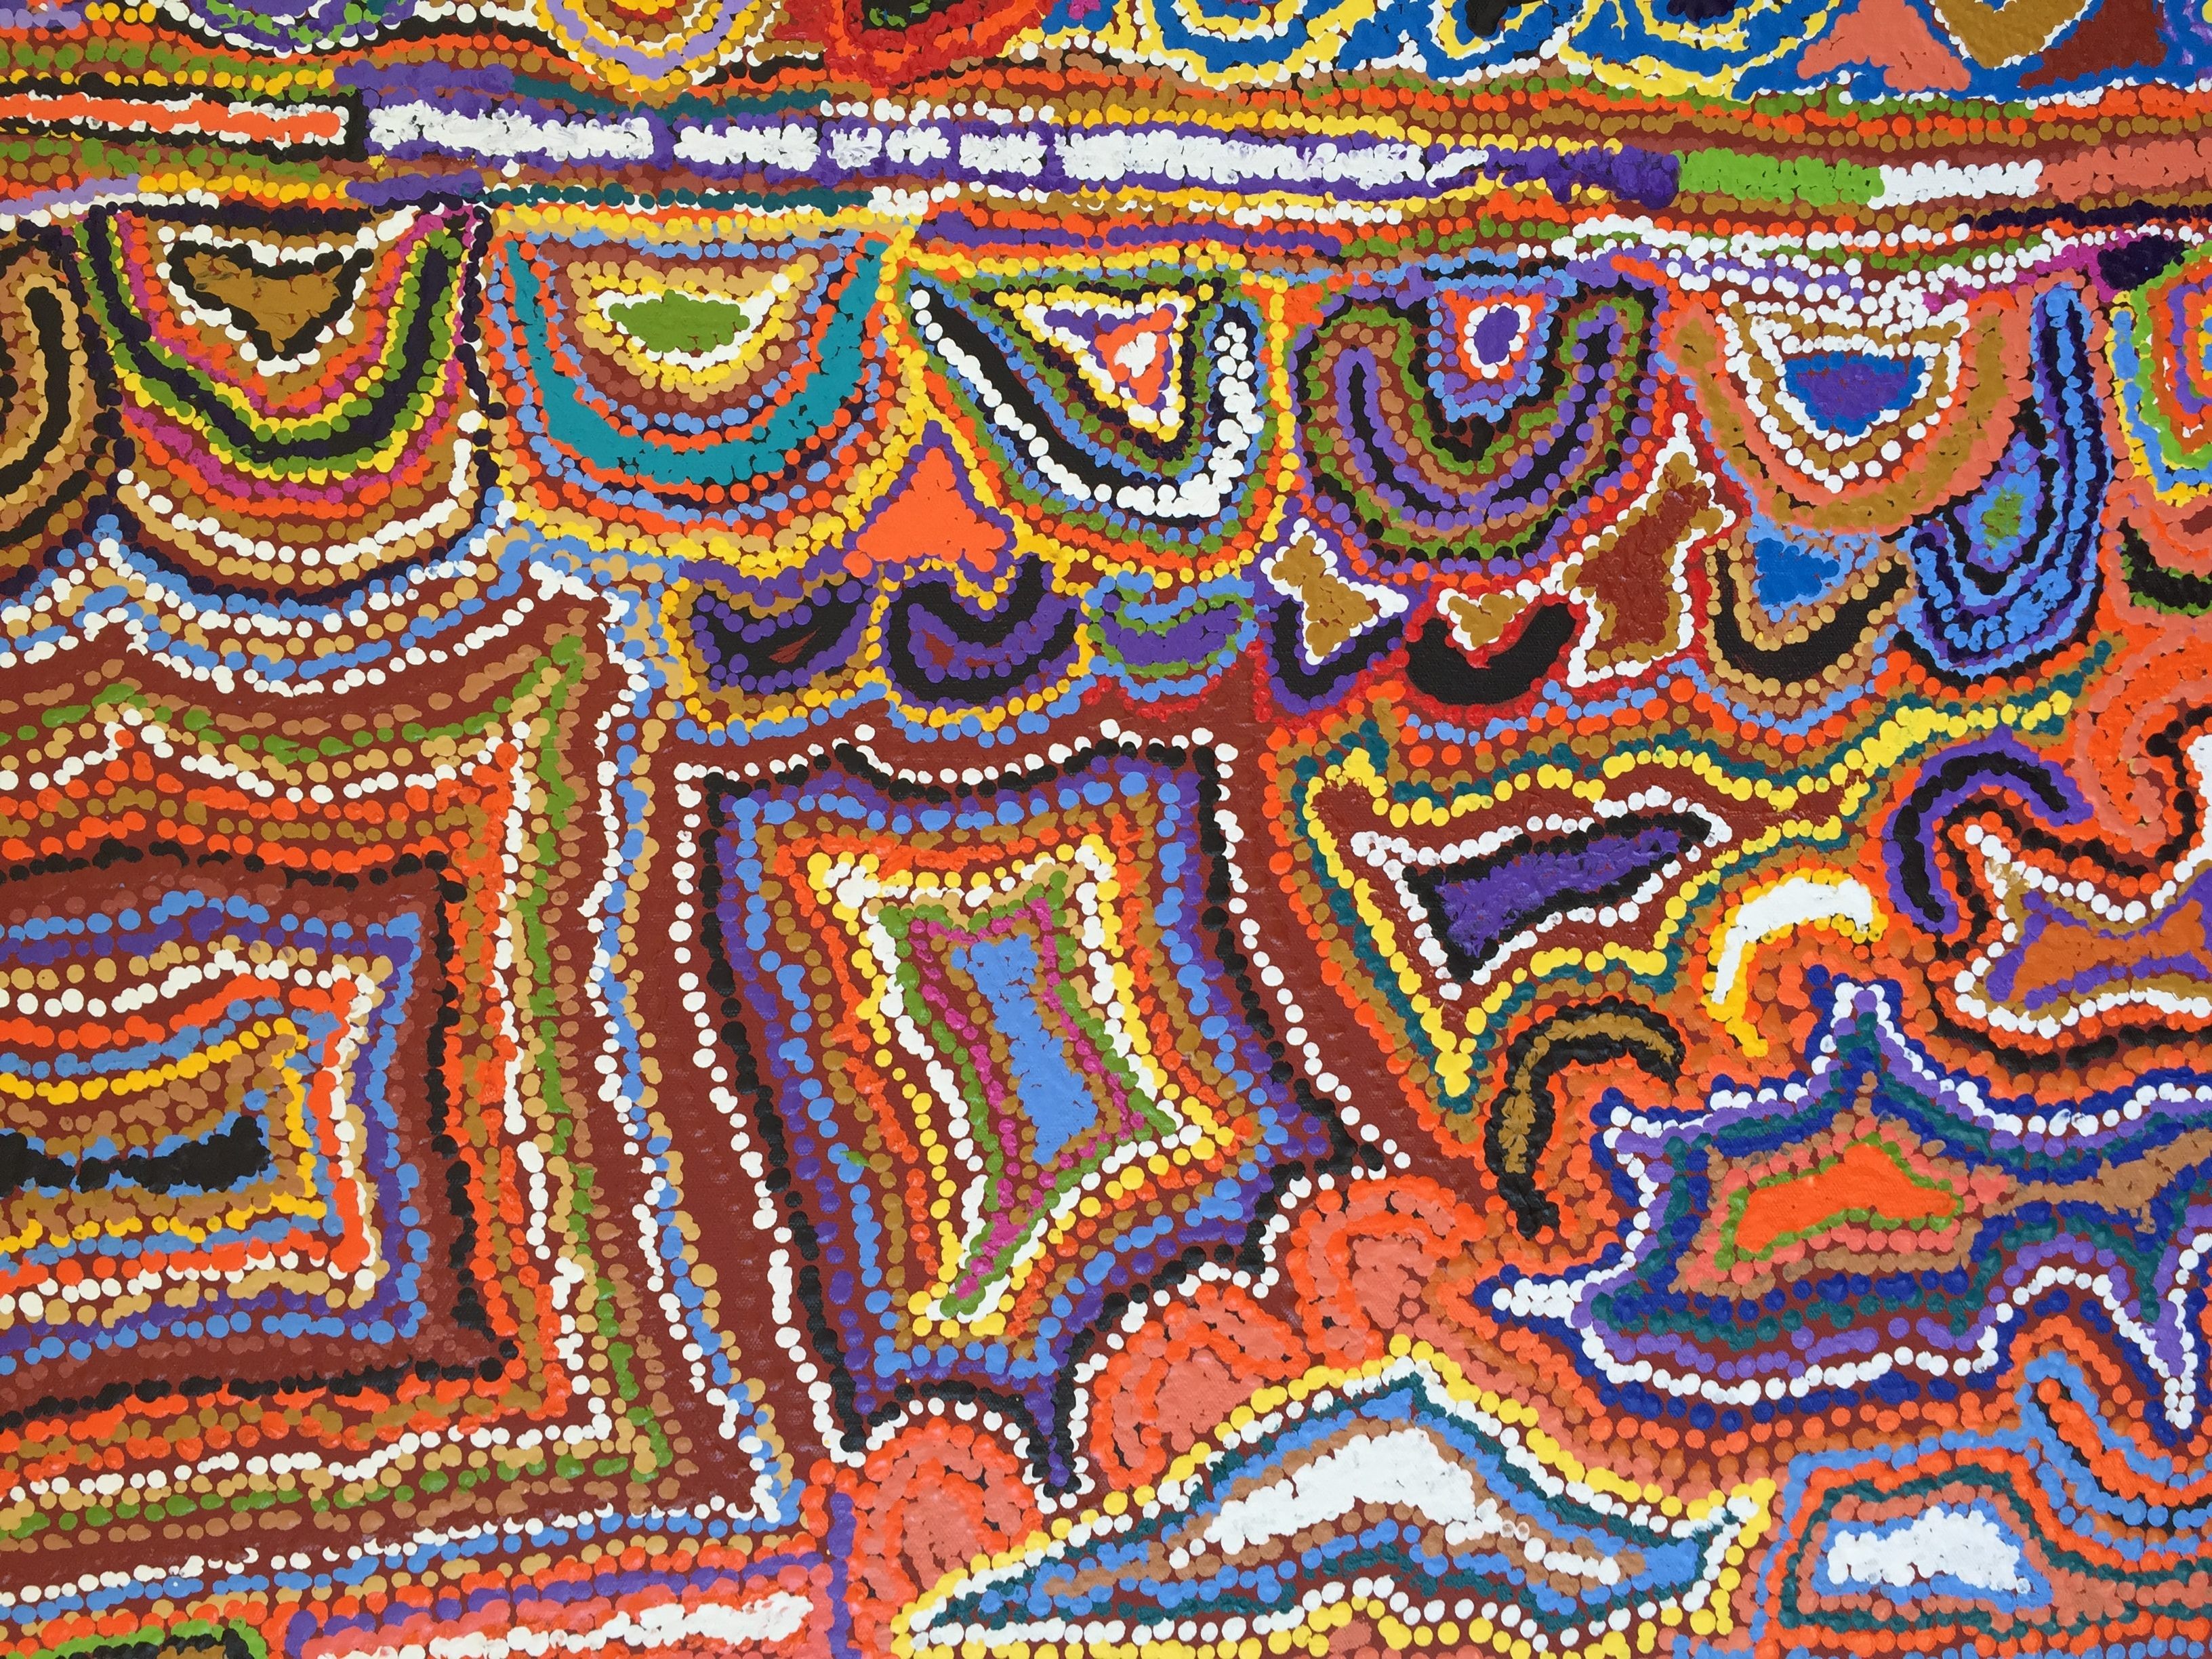 Aboriginal Art Explained